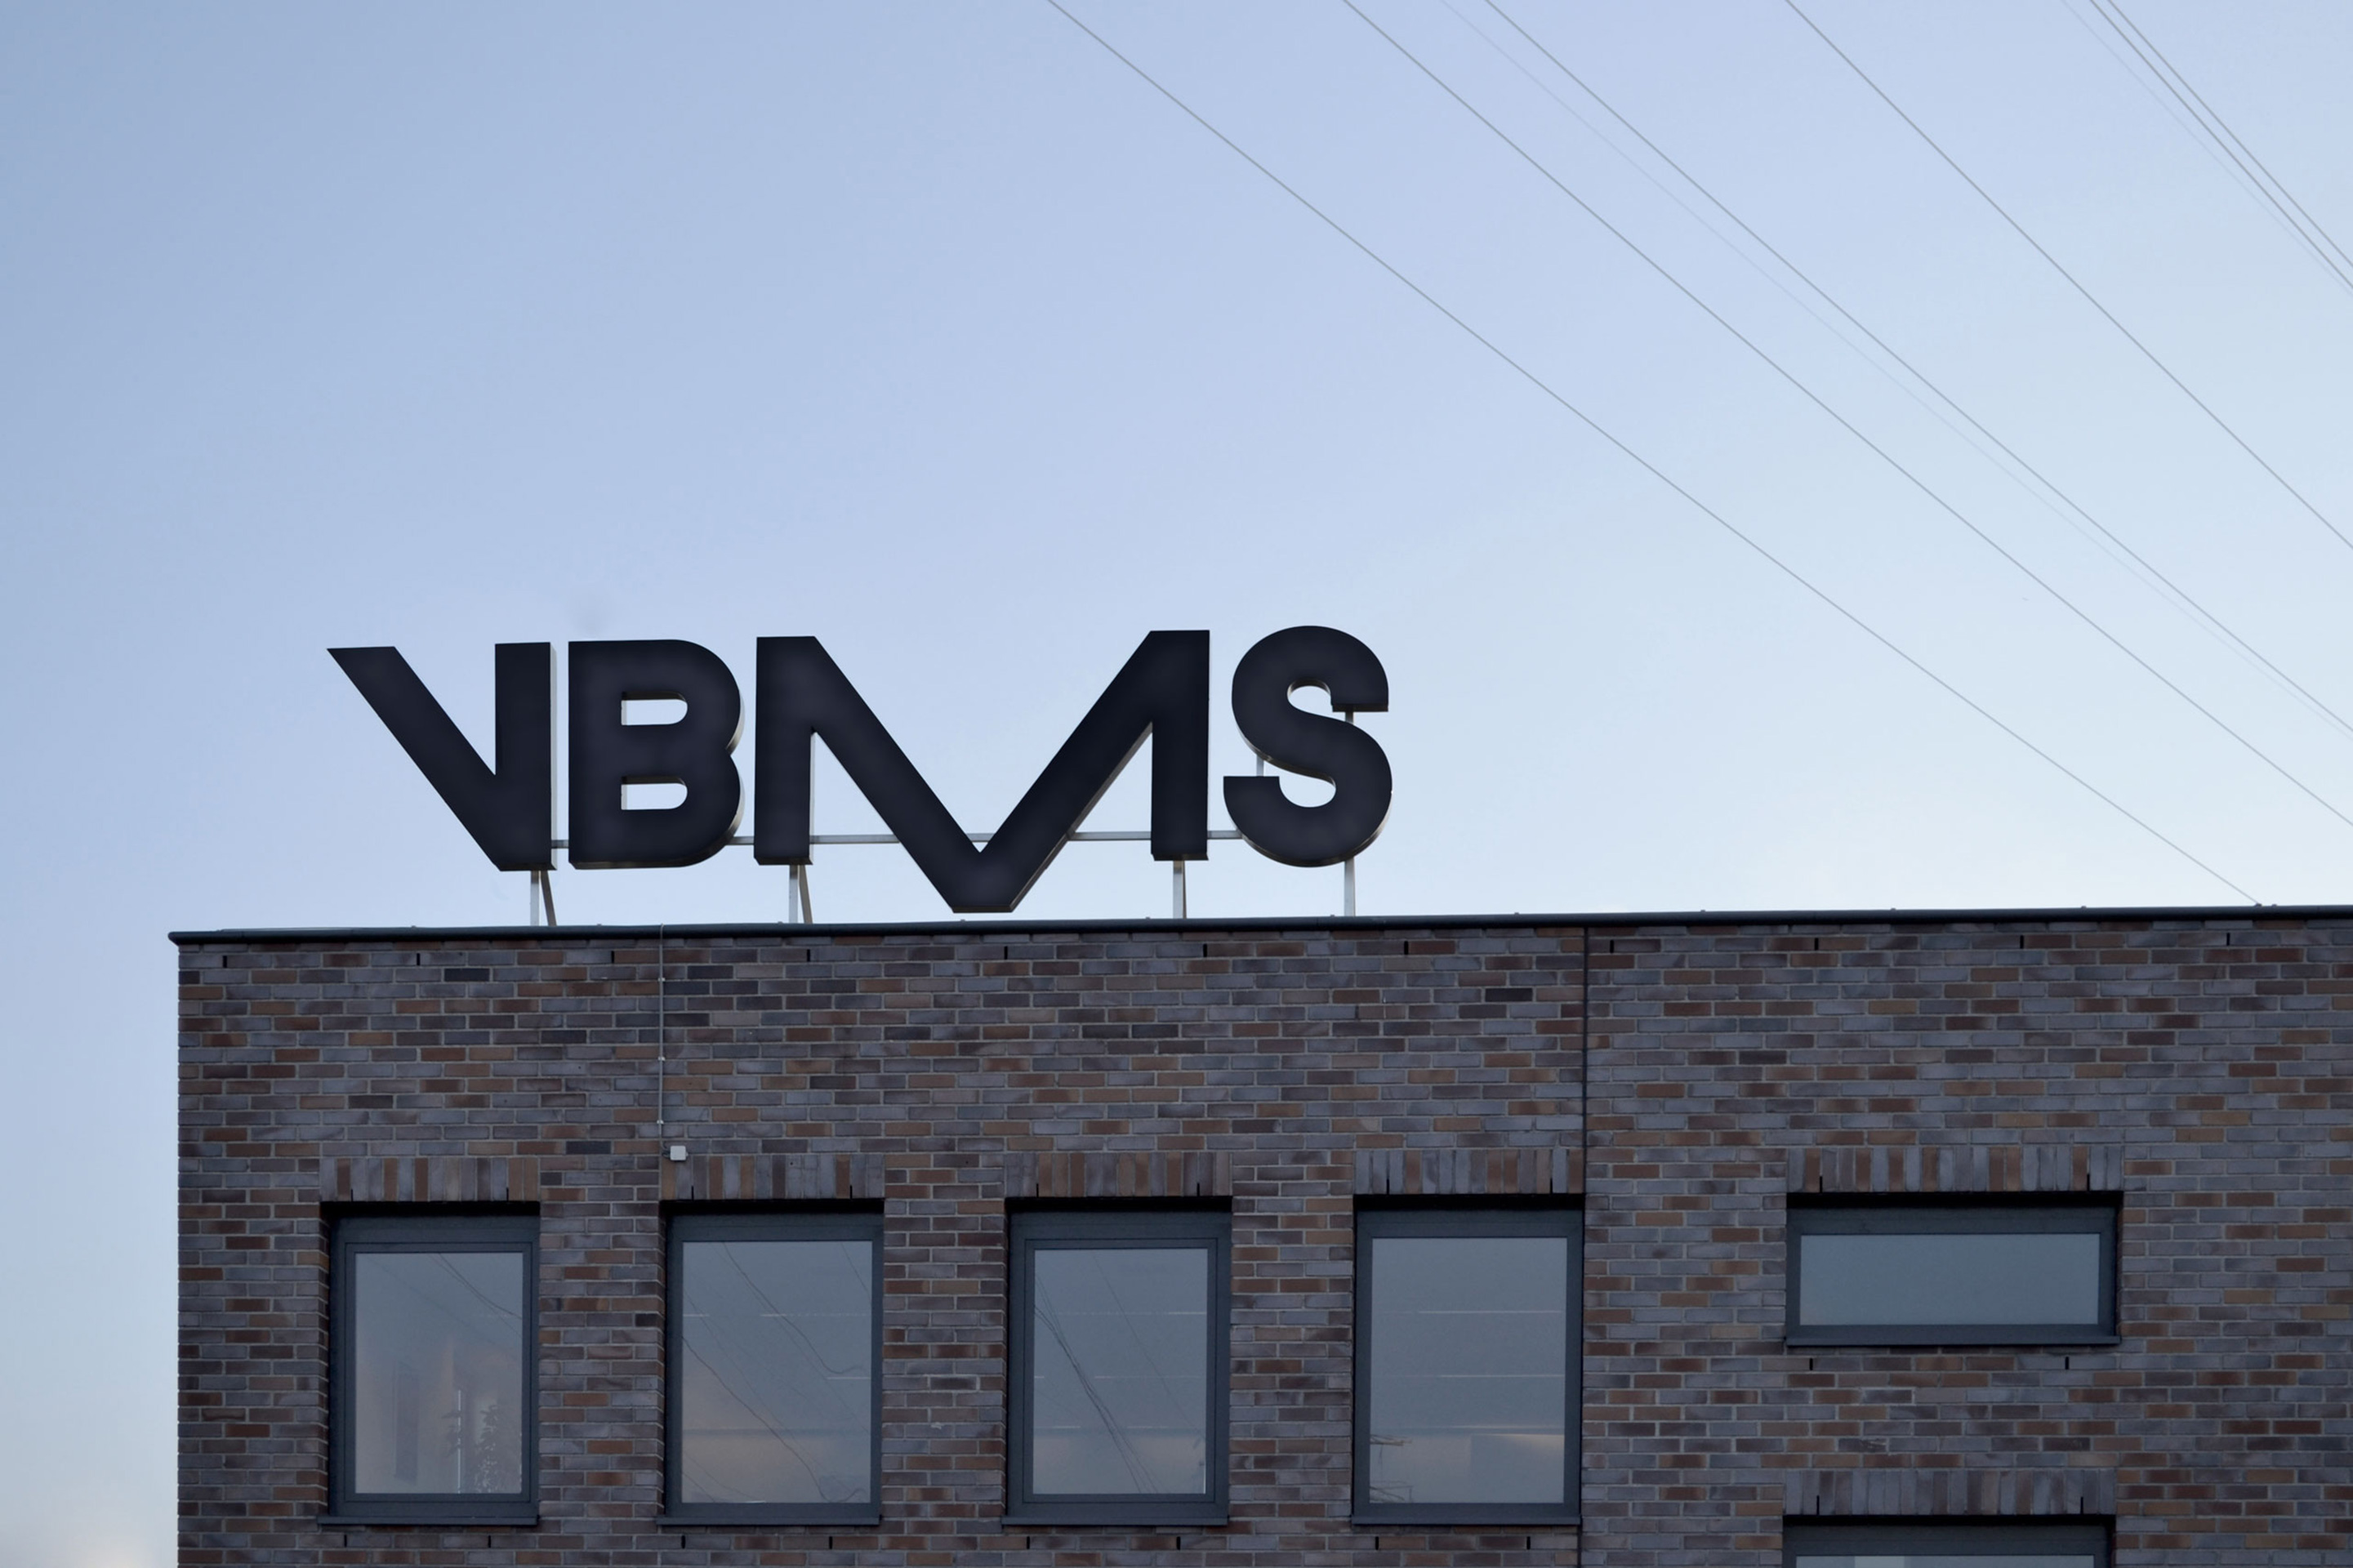 studio dumbar design visual brand identity for VBMS expert in offshore installations logo building hoarding design